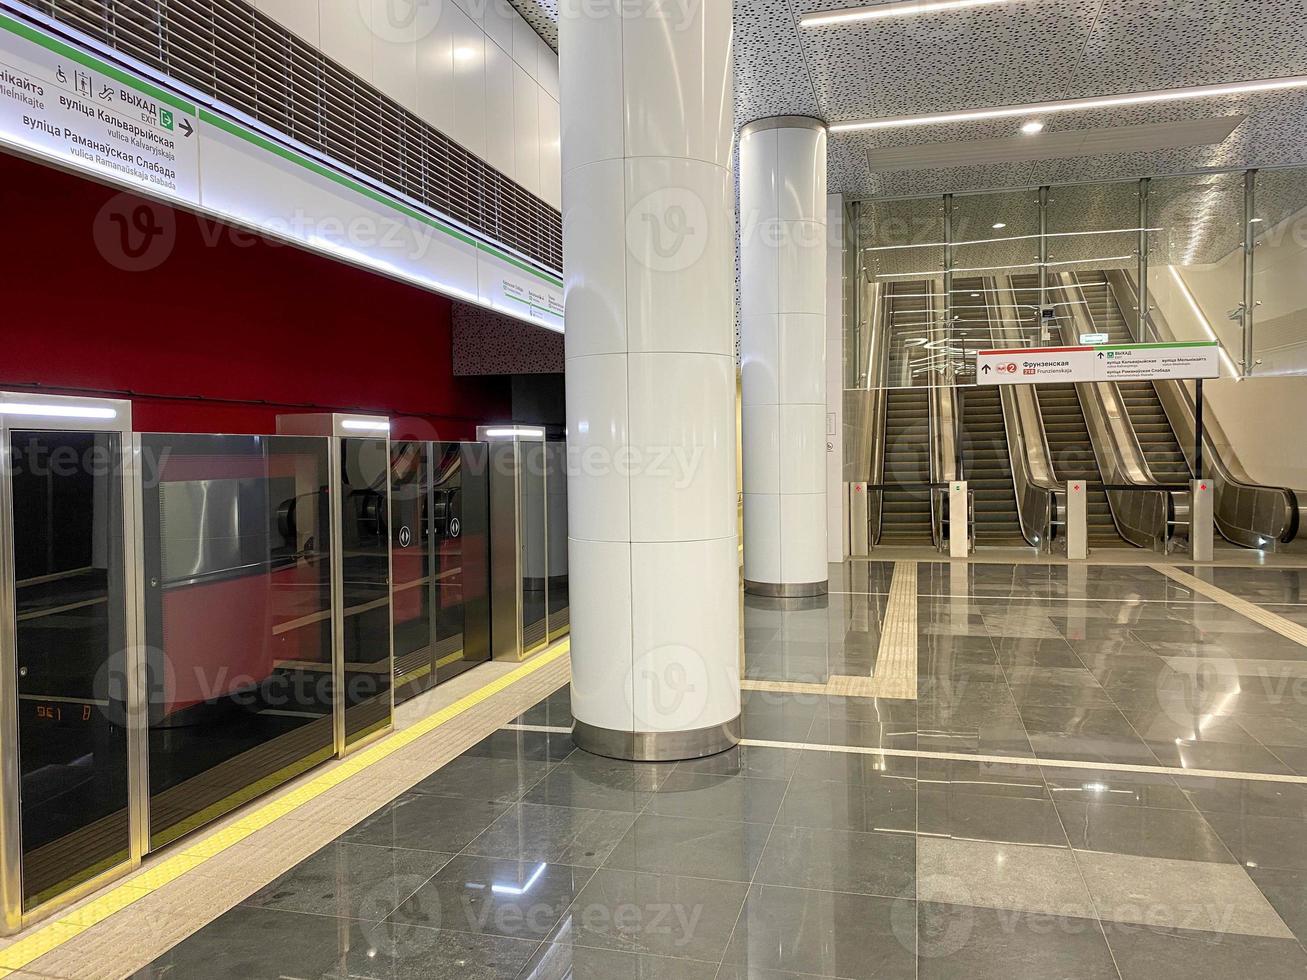 automatisch deur platform systeem Bij een nieuw modern metro station. metro veiligheid systeem glas mooi deuren Open synchroon met de deuren van de aankomen trein auto foto